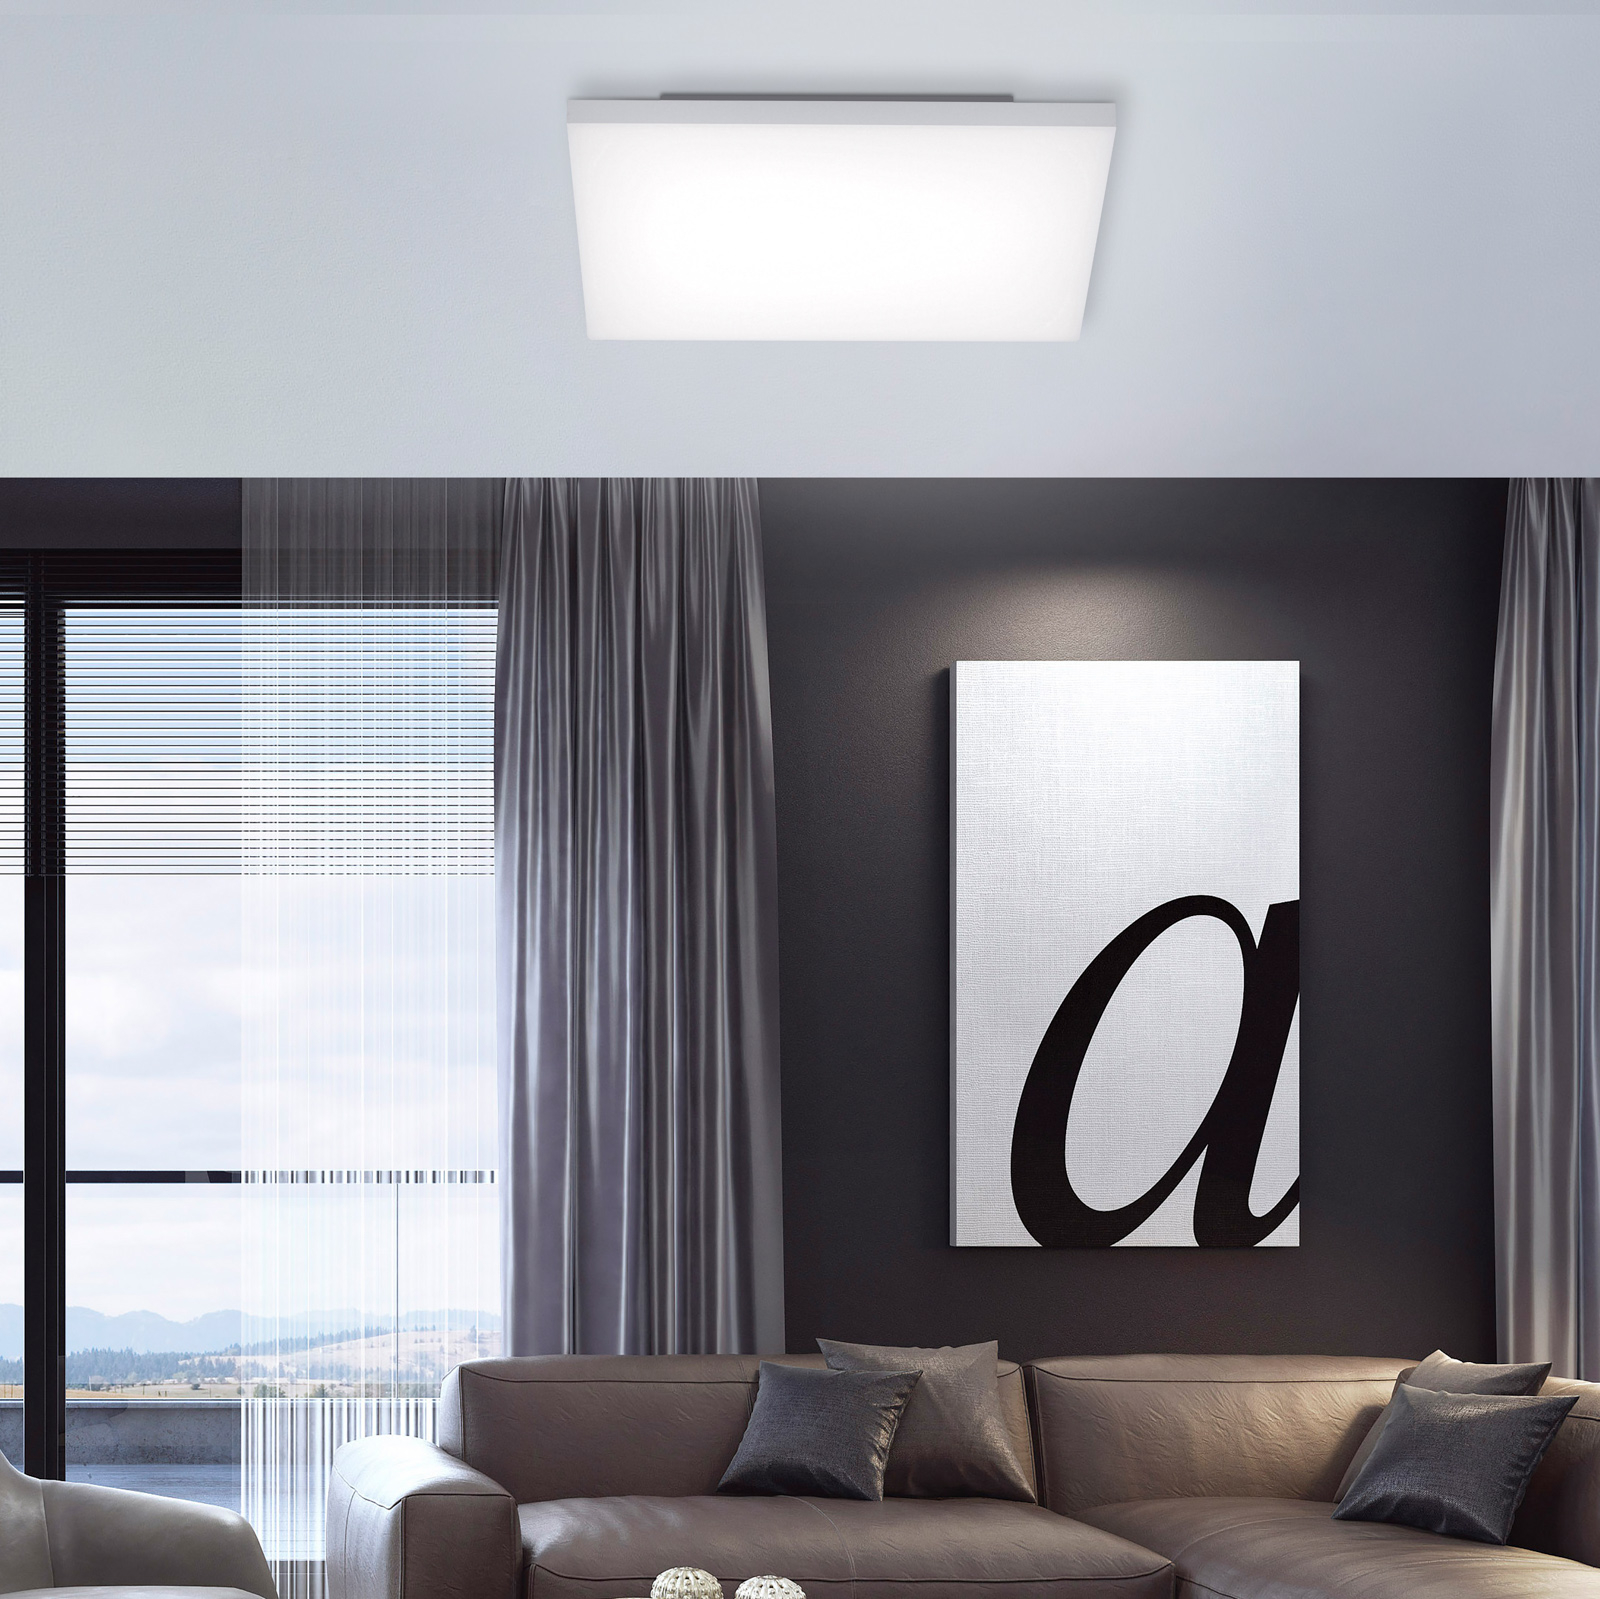 Φωτιστικό οροφής Canvas LED, ρυθμιζόμενο λευκό, 45 cm